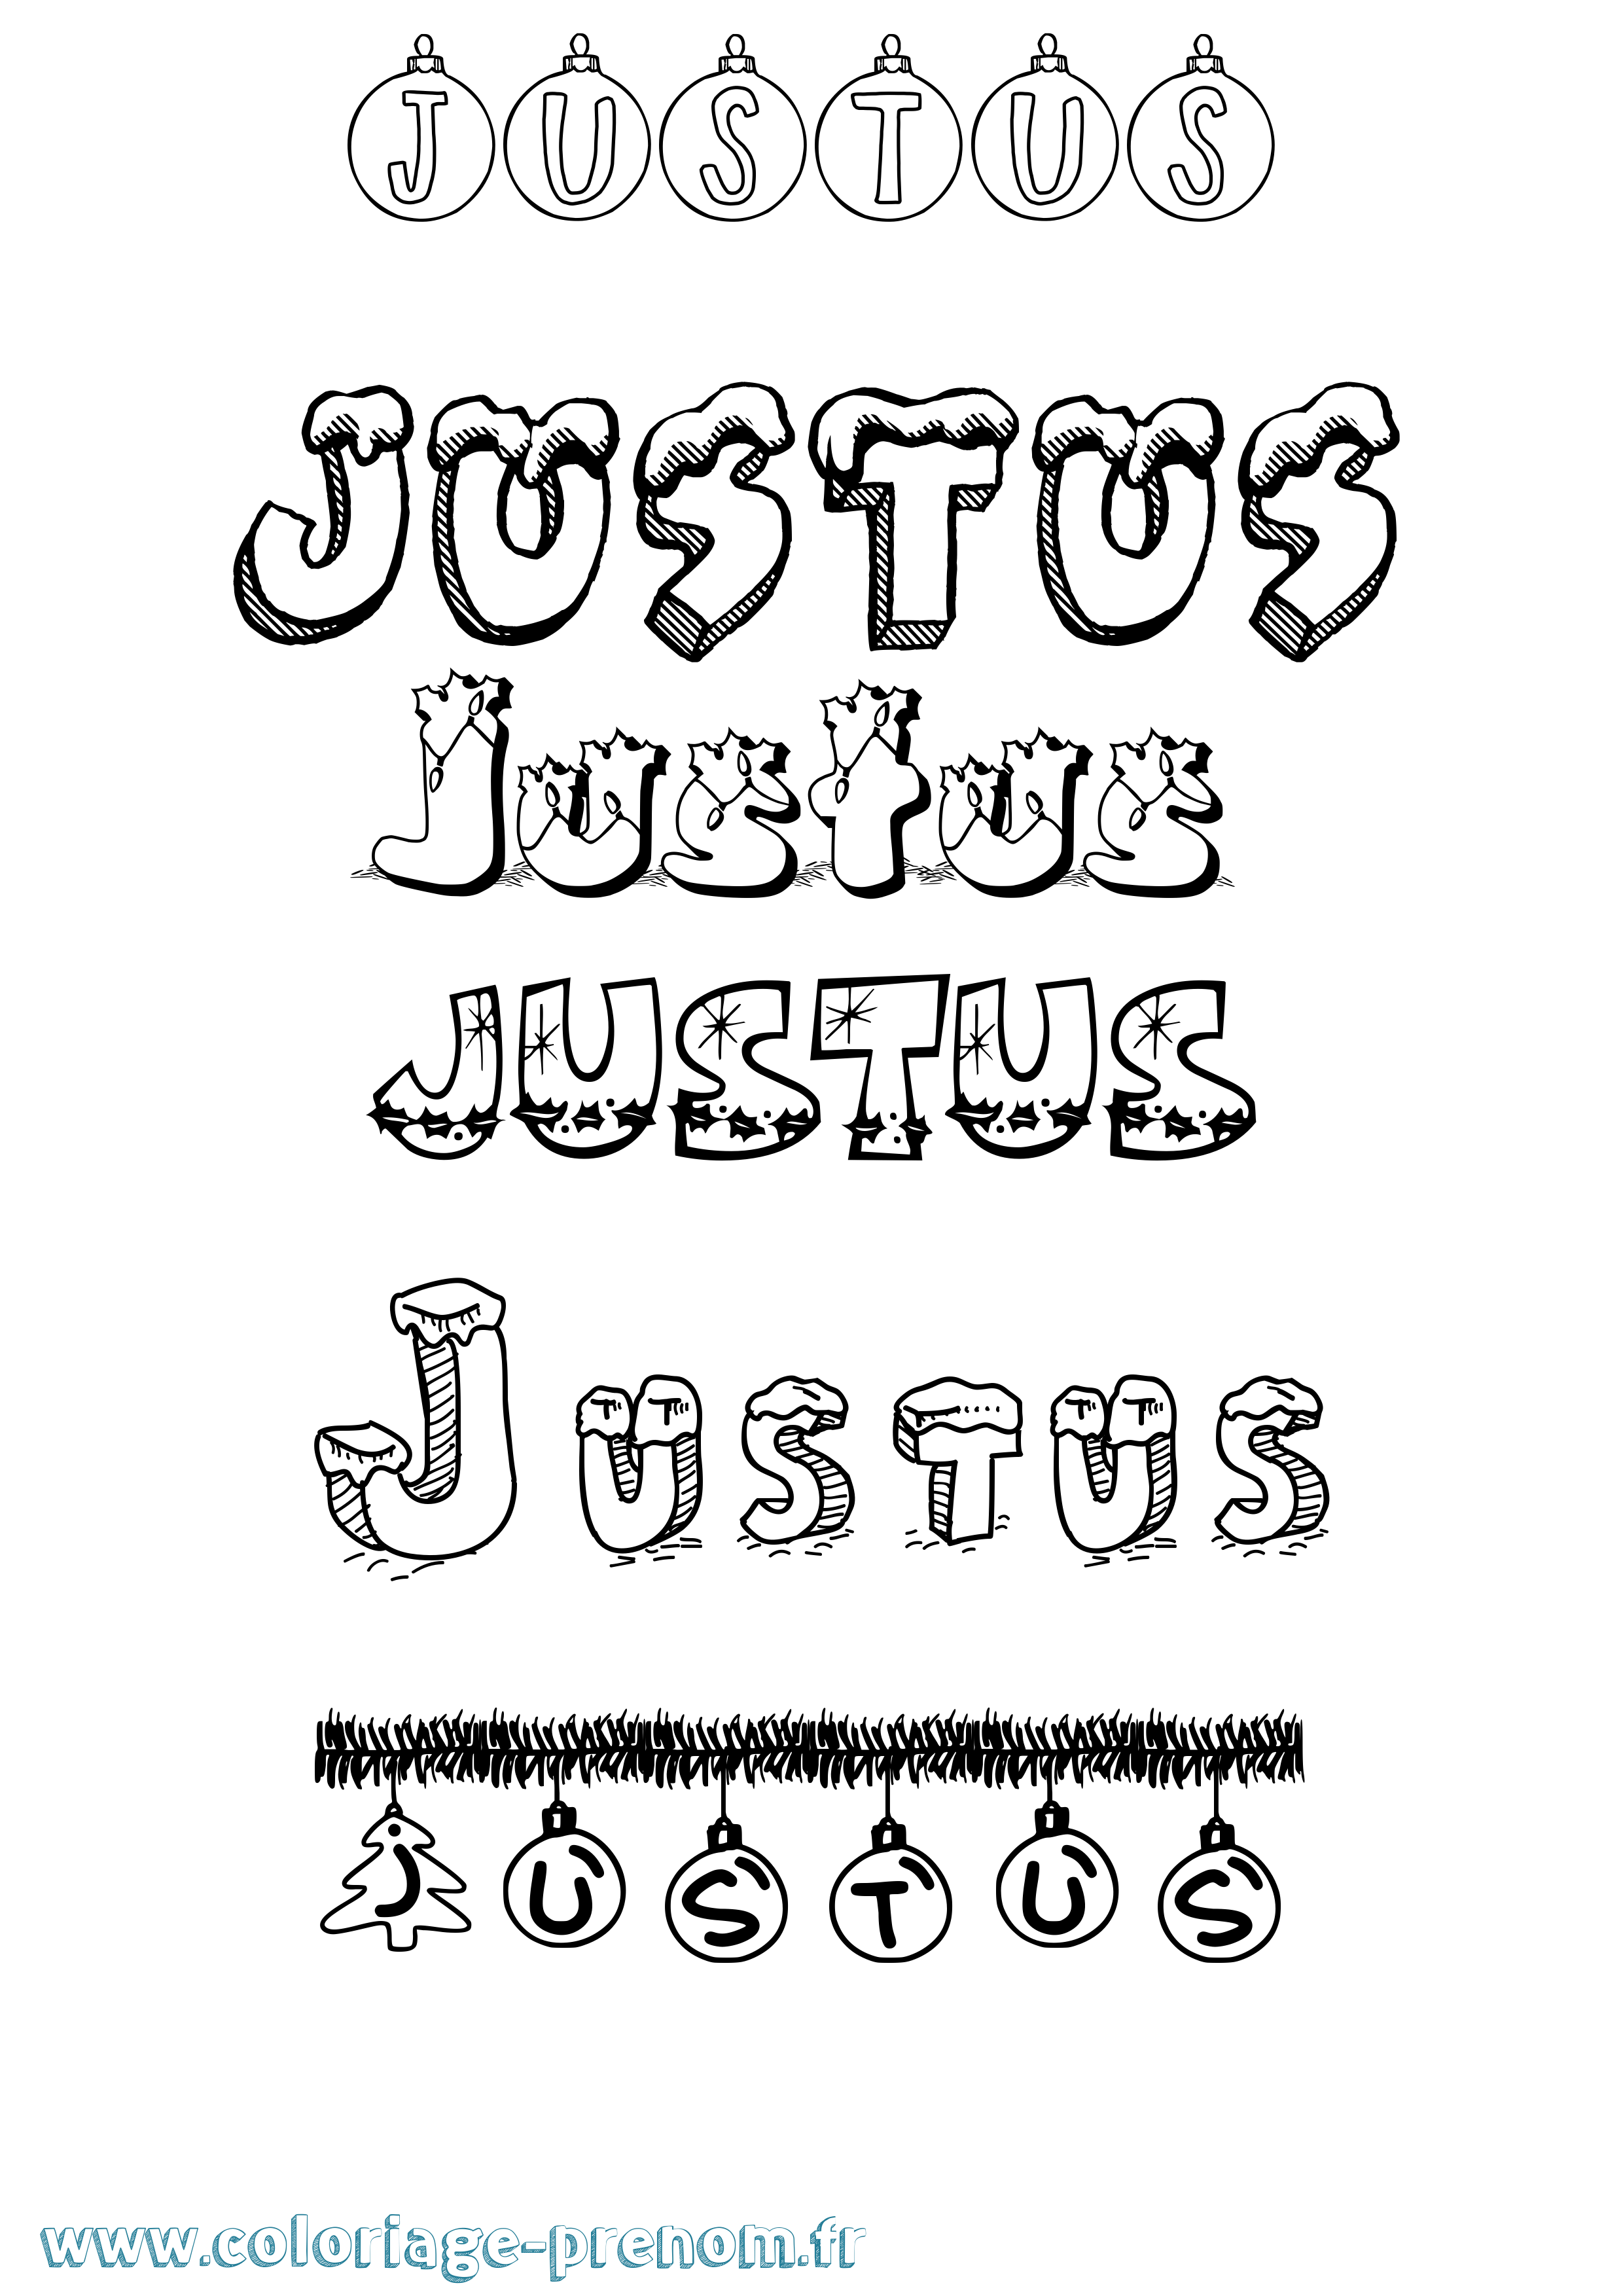 Coloriage prénom Justus Noël